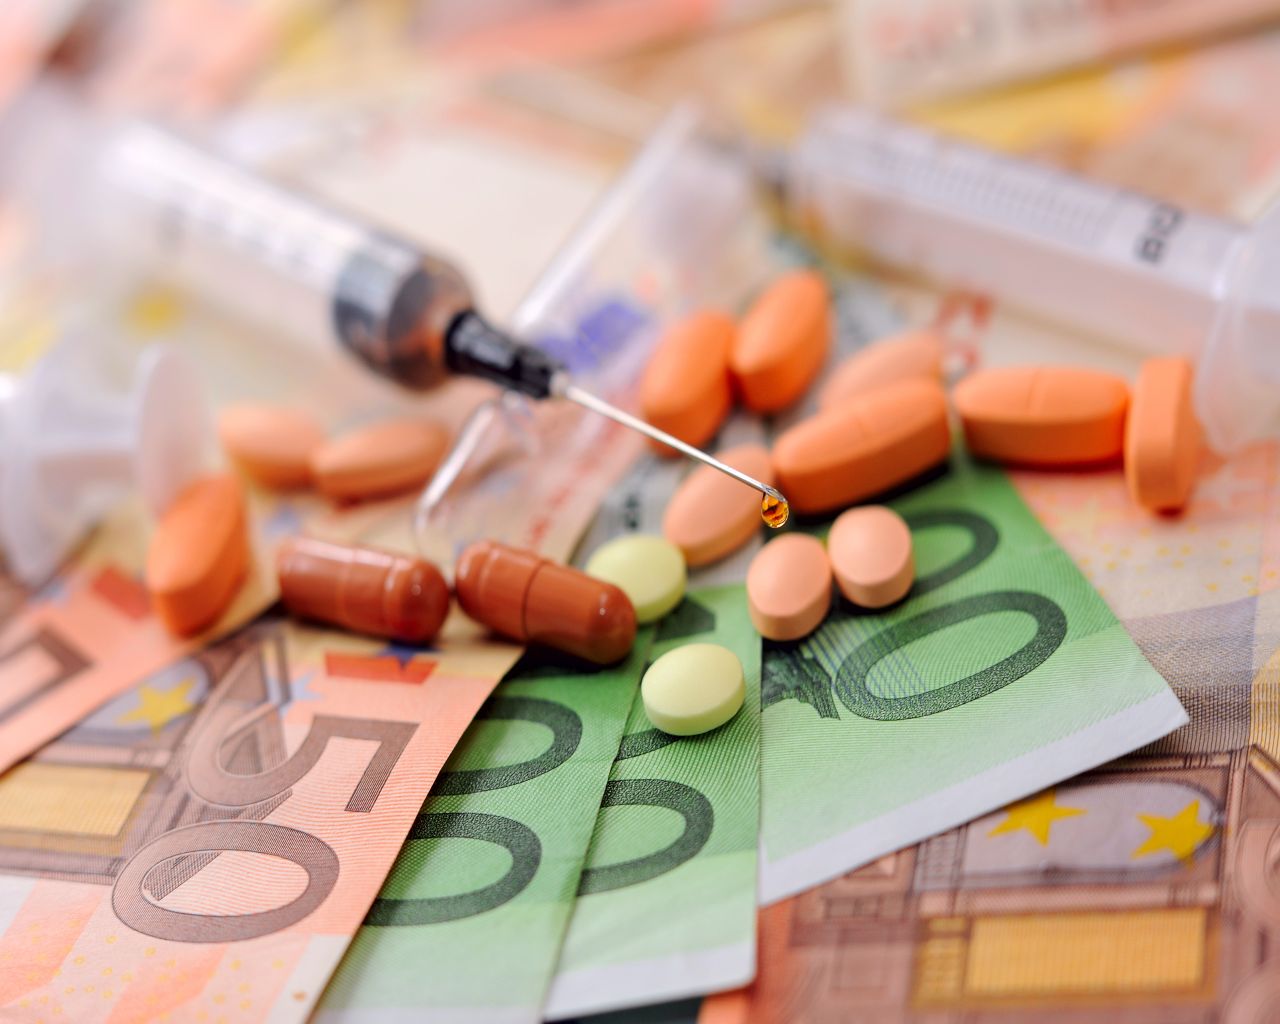 Πούλησαν ψευδοφάρμακο σε καρκινοπαθή αντί 95.000 ευρώ